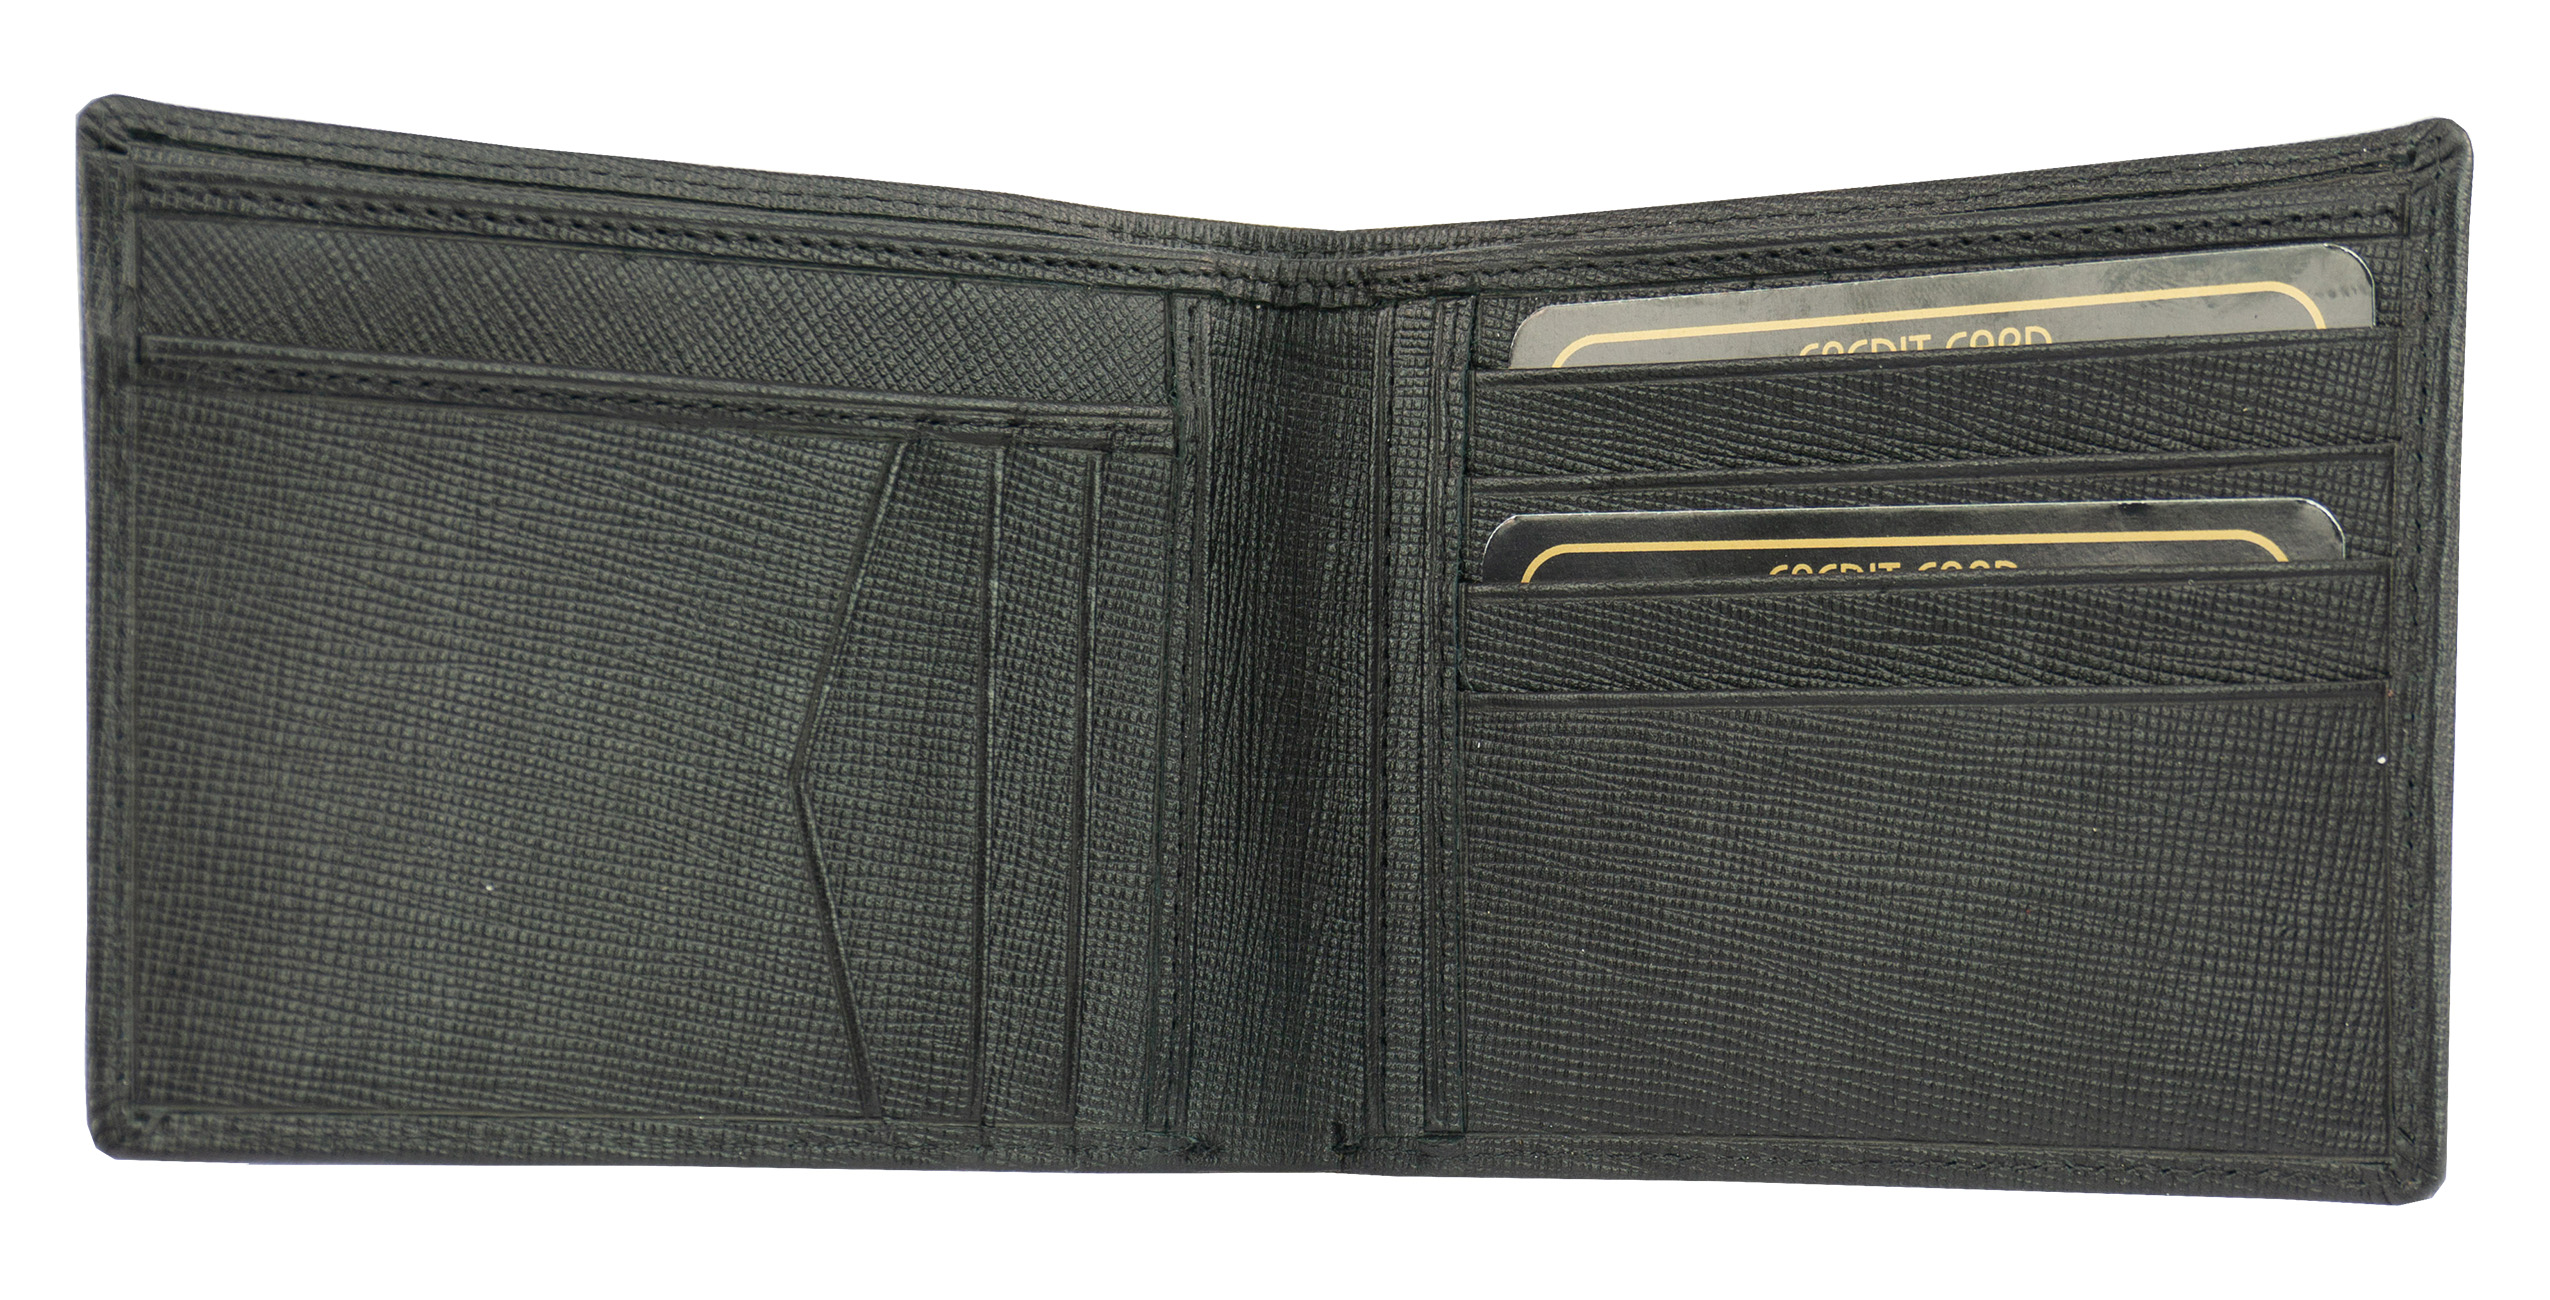 Scheintasche Geldbeutel Saffiano Leder in schwarz von Stefano - K-107-60